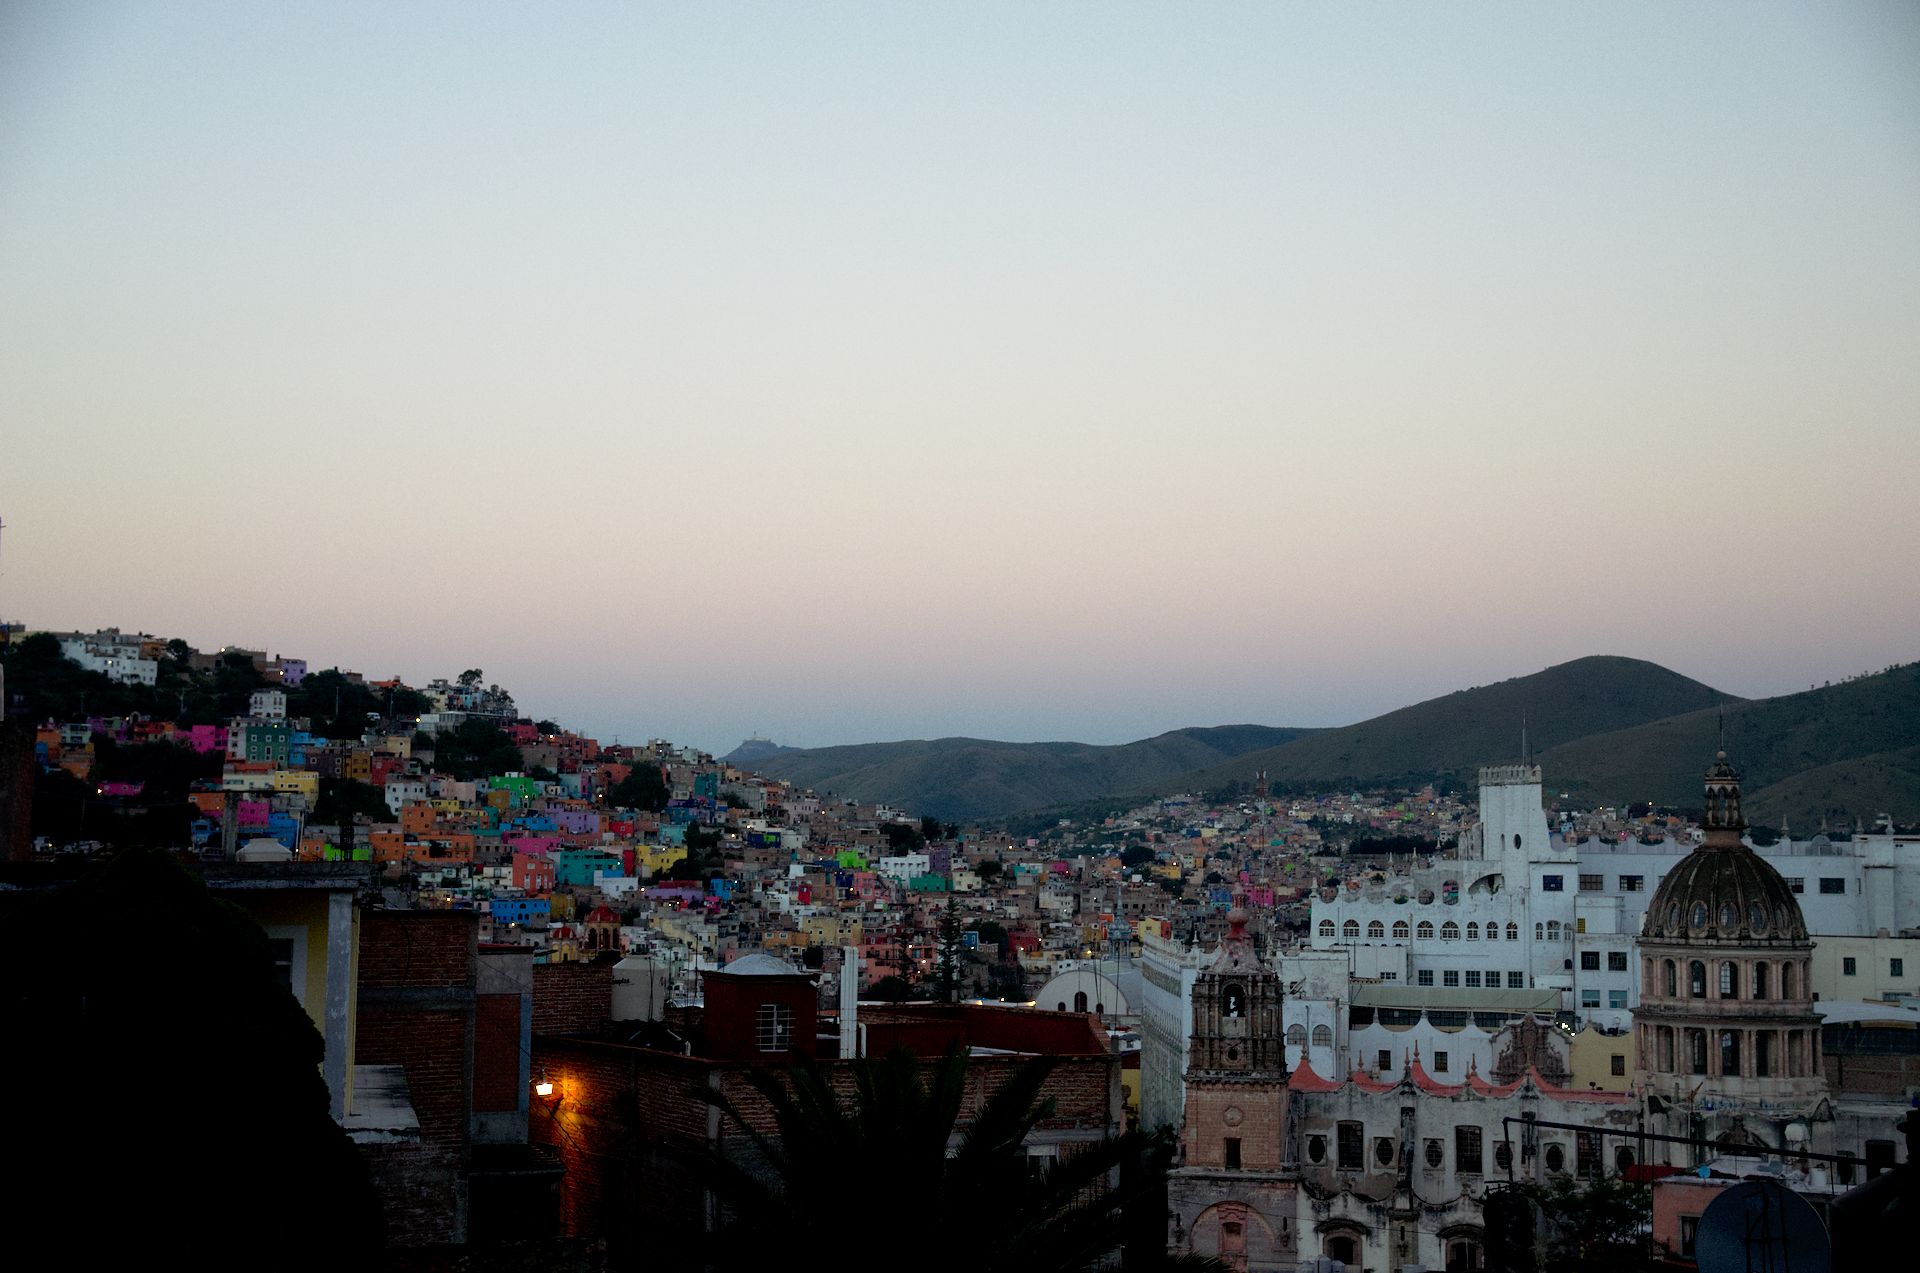 Los preciosos colores de Guanajuato